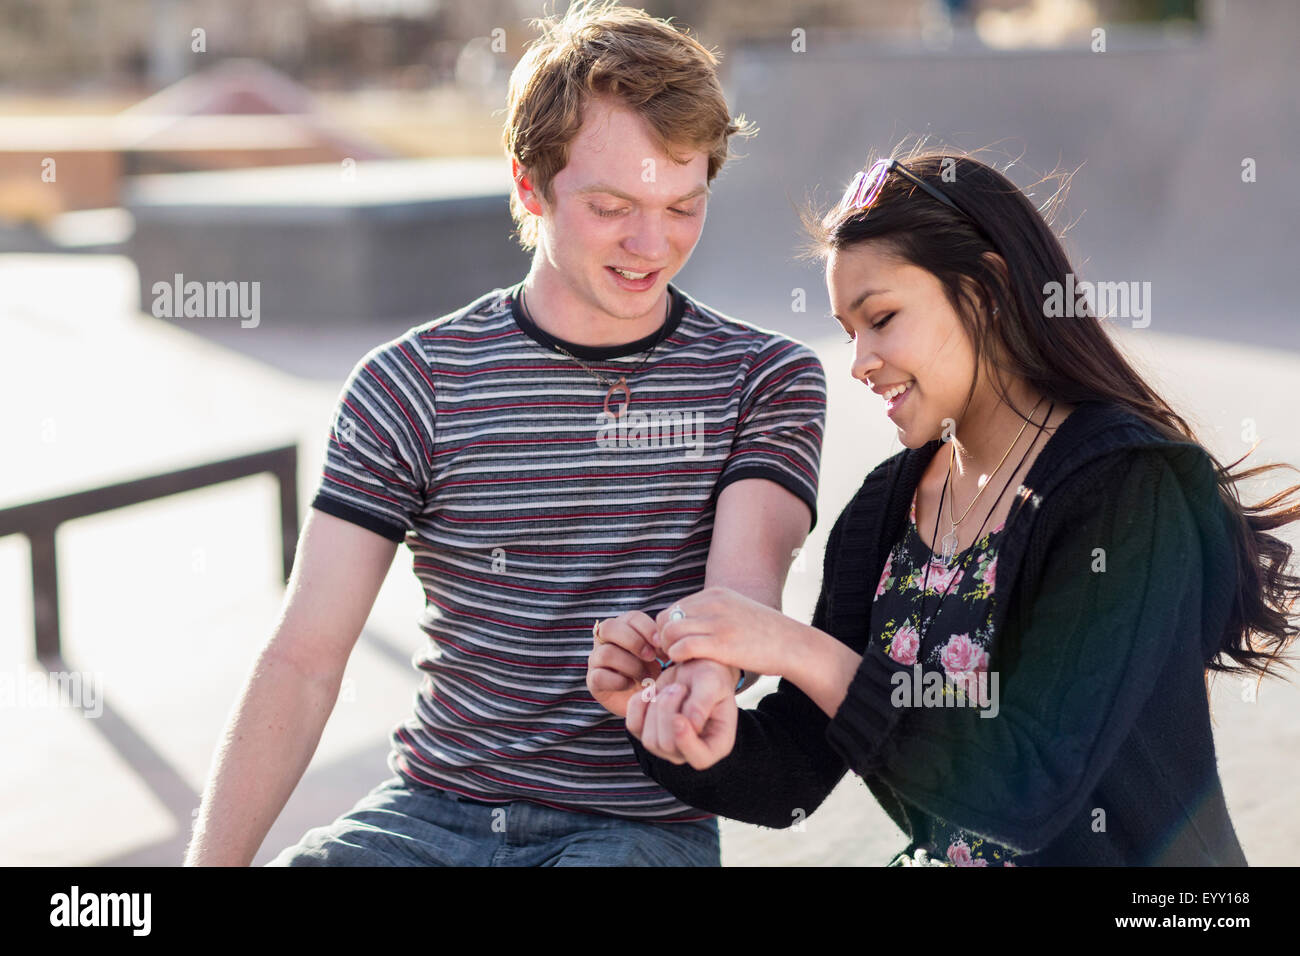 Teenage girl tying bracelet around wrist of boyfriend Stock Photo